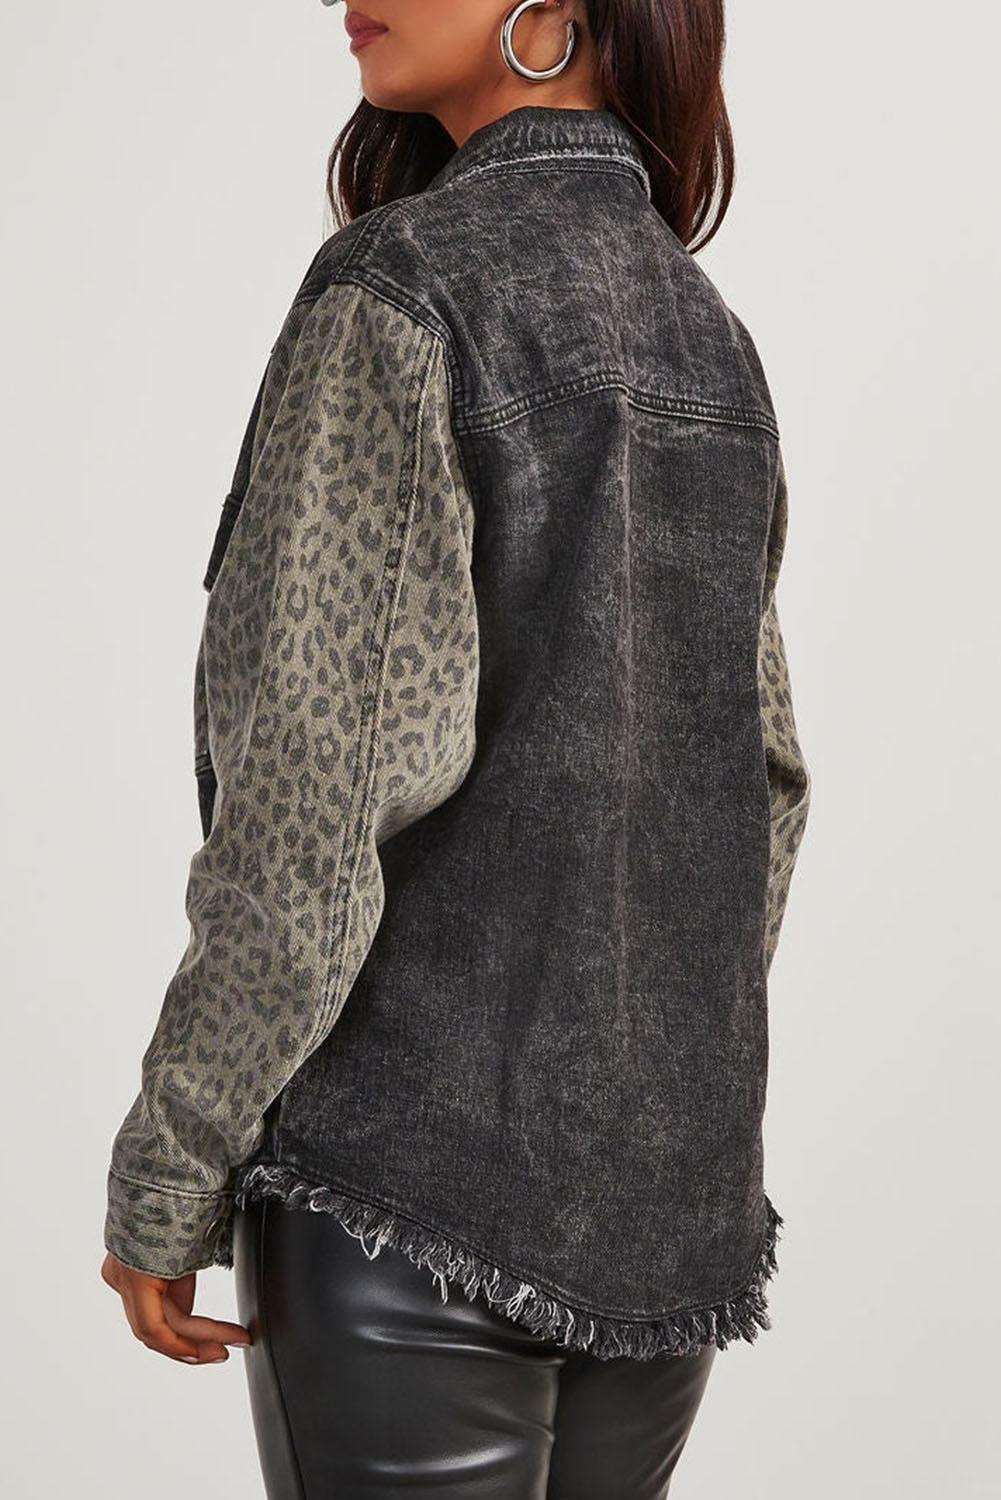 Crna traper jakna s leopard zaštitom i starinskim neobrađenim porubom